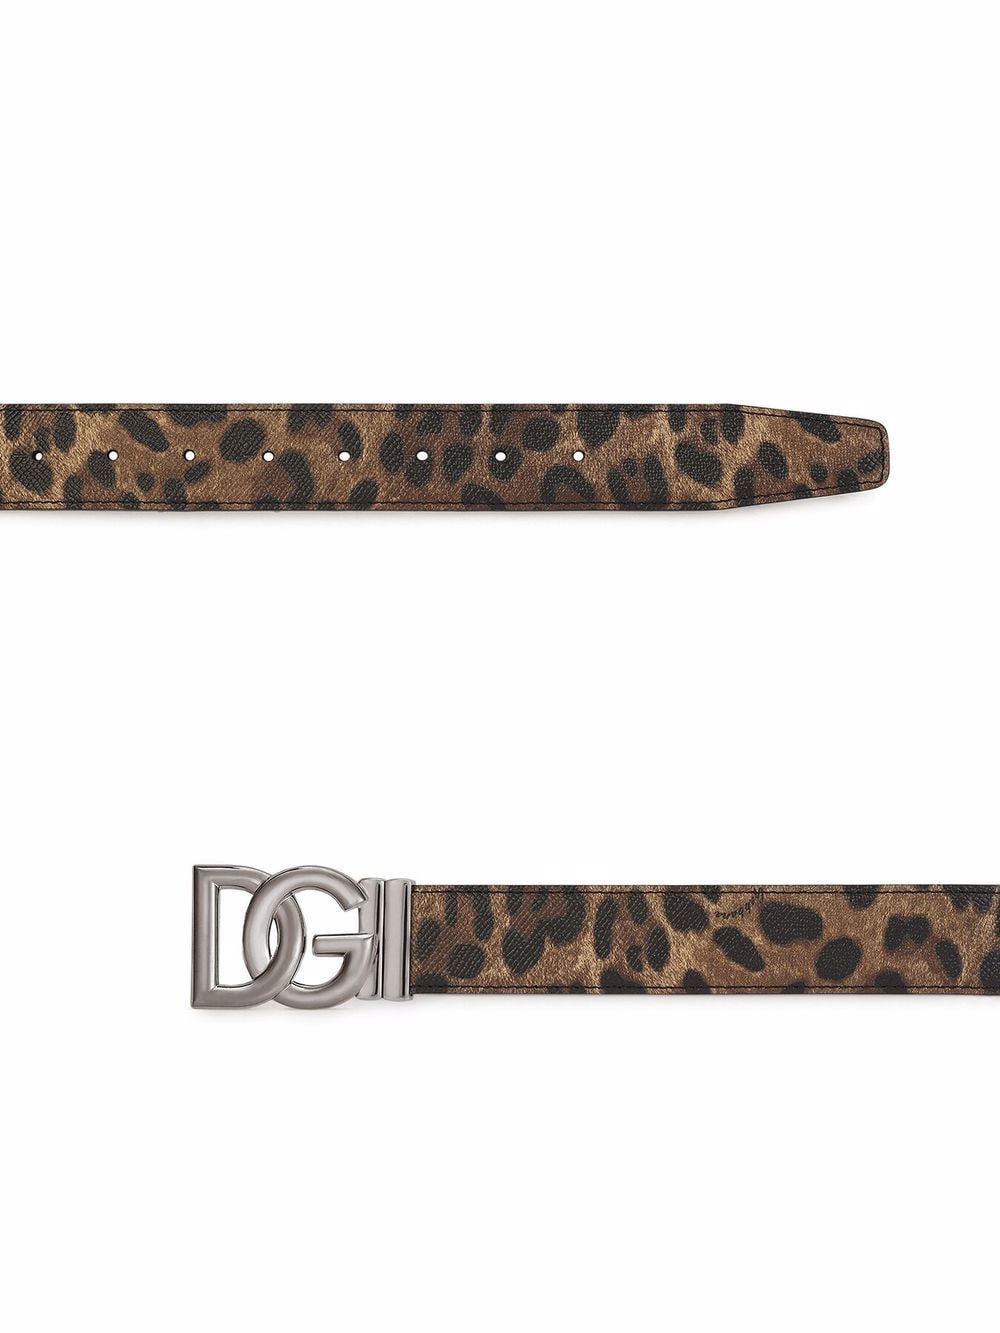 фото Dolce & gabbana ремень с леопардовым принтом и логотипом